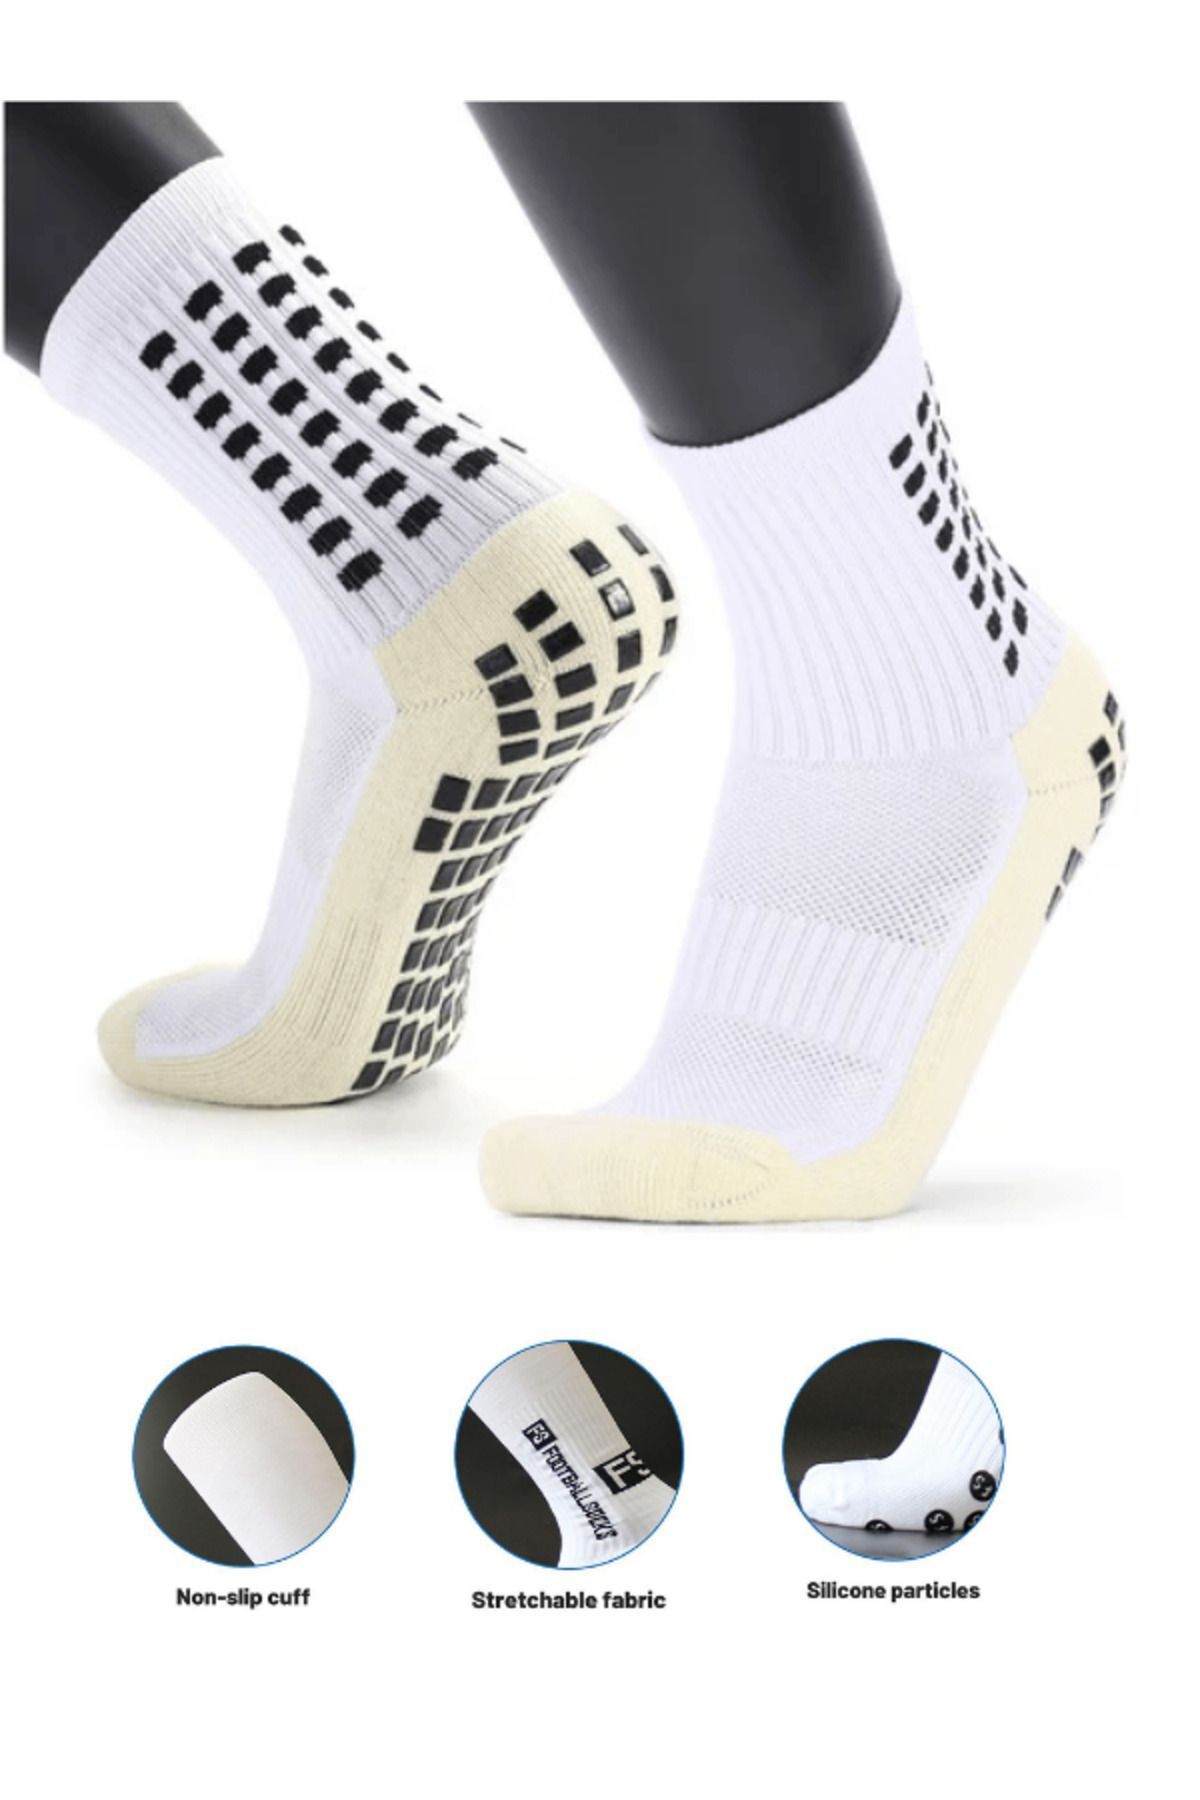 Socks Sirius Kingwheat Erkek Siyah & Beyaz Kaymaz Silikon Taban Pro Futbol Tozluk Dikişsiz Maç Sporcu Çorabı